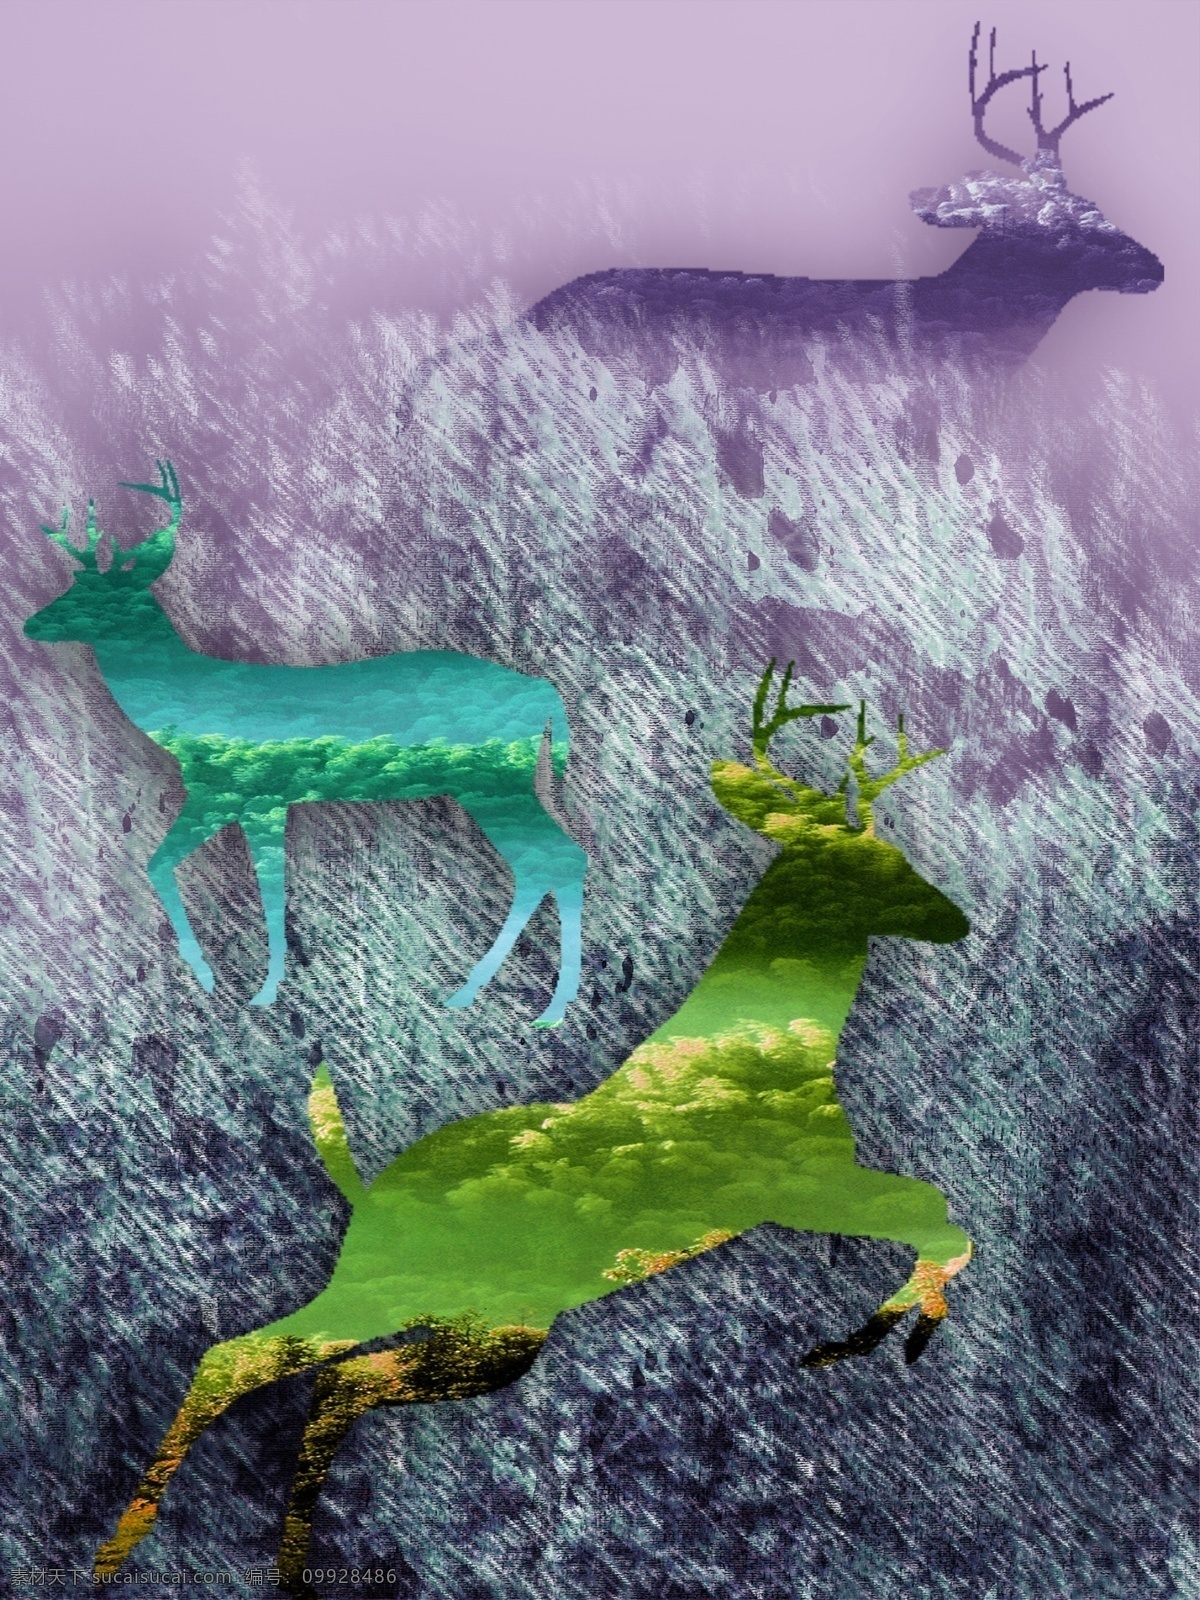 抽象 梦幻 紫色 鹿 影 客厅 装饰画 一联画 剪影鹿 梦幻紫色 客厅装饰画 三色鹿